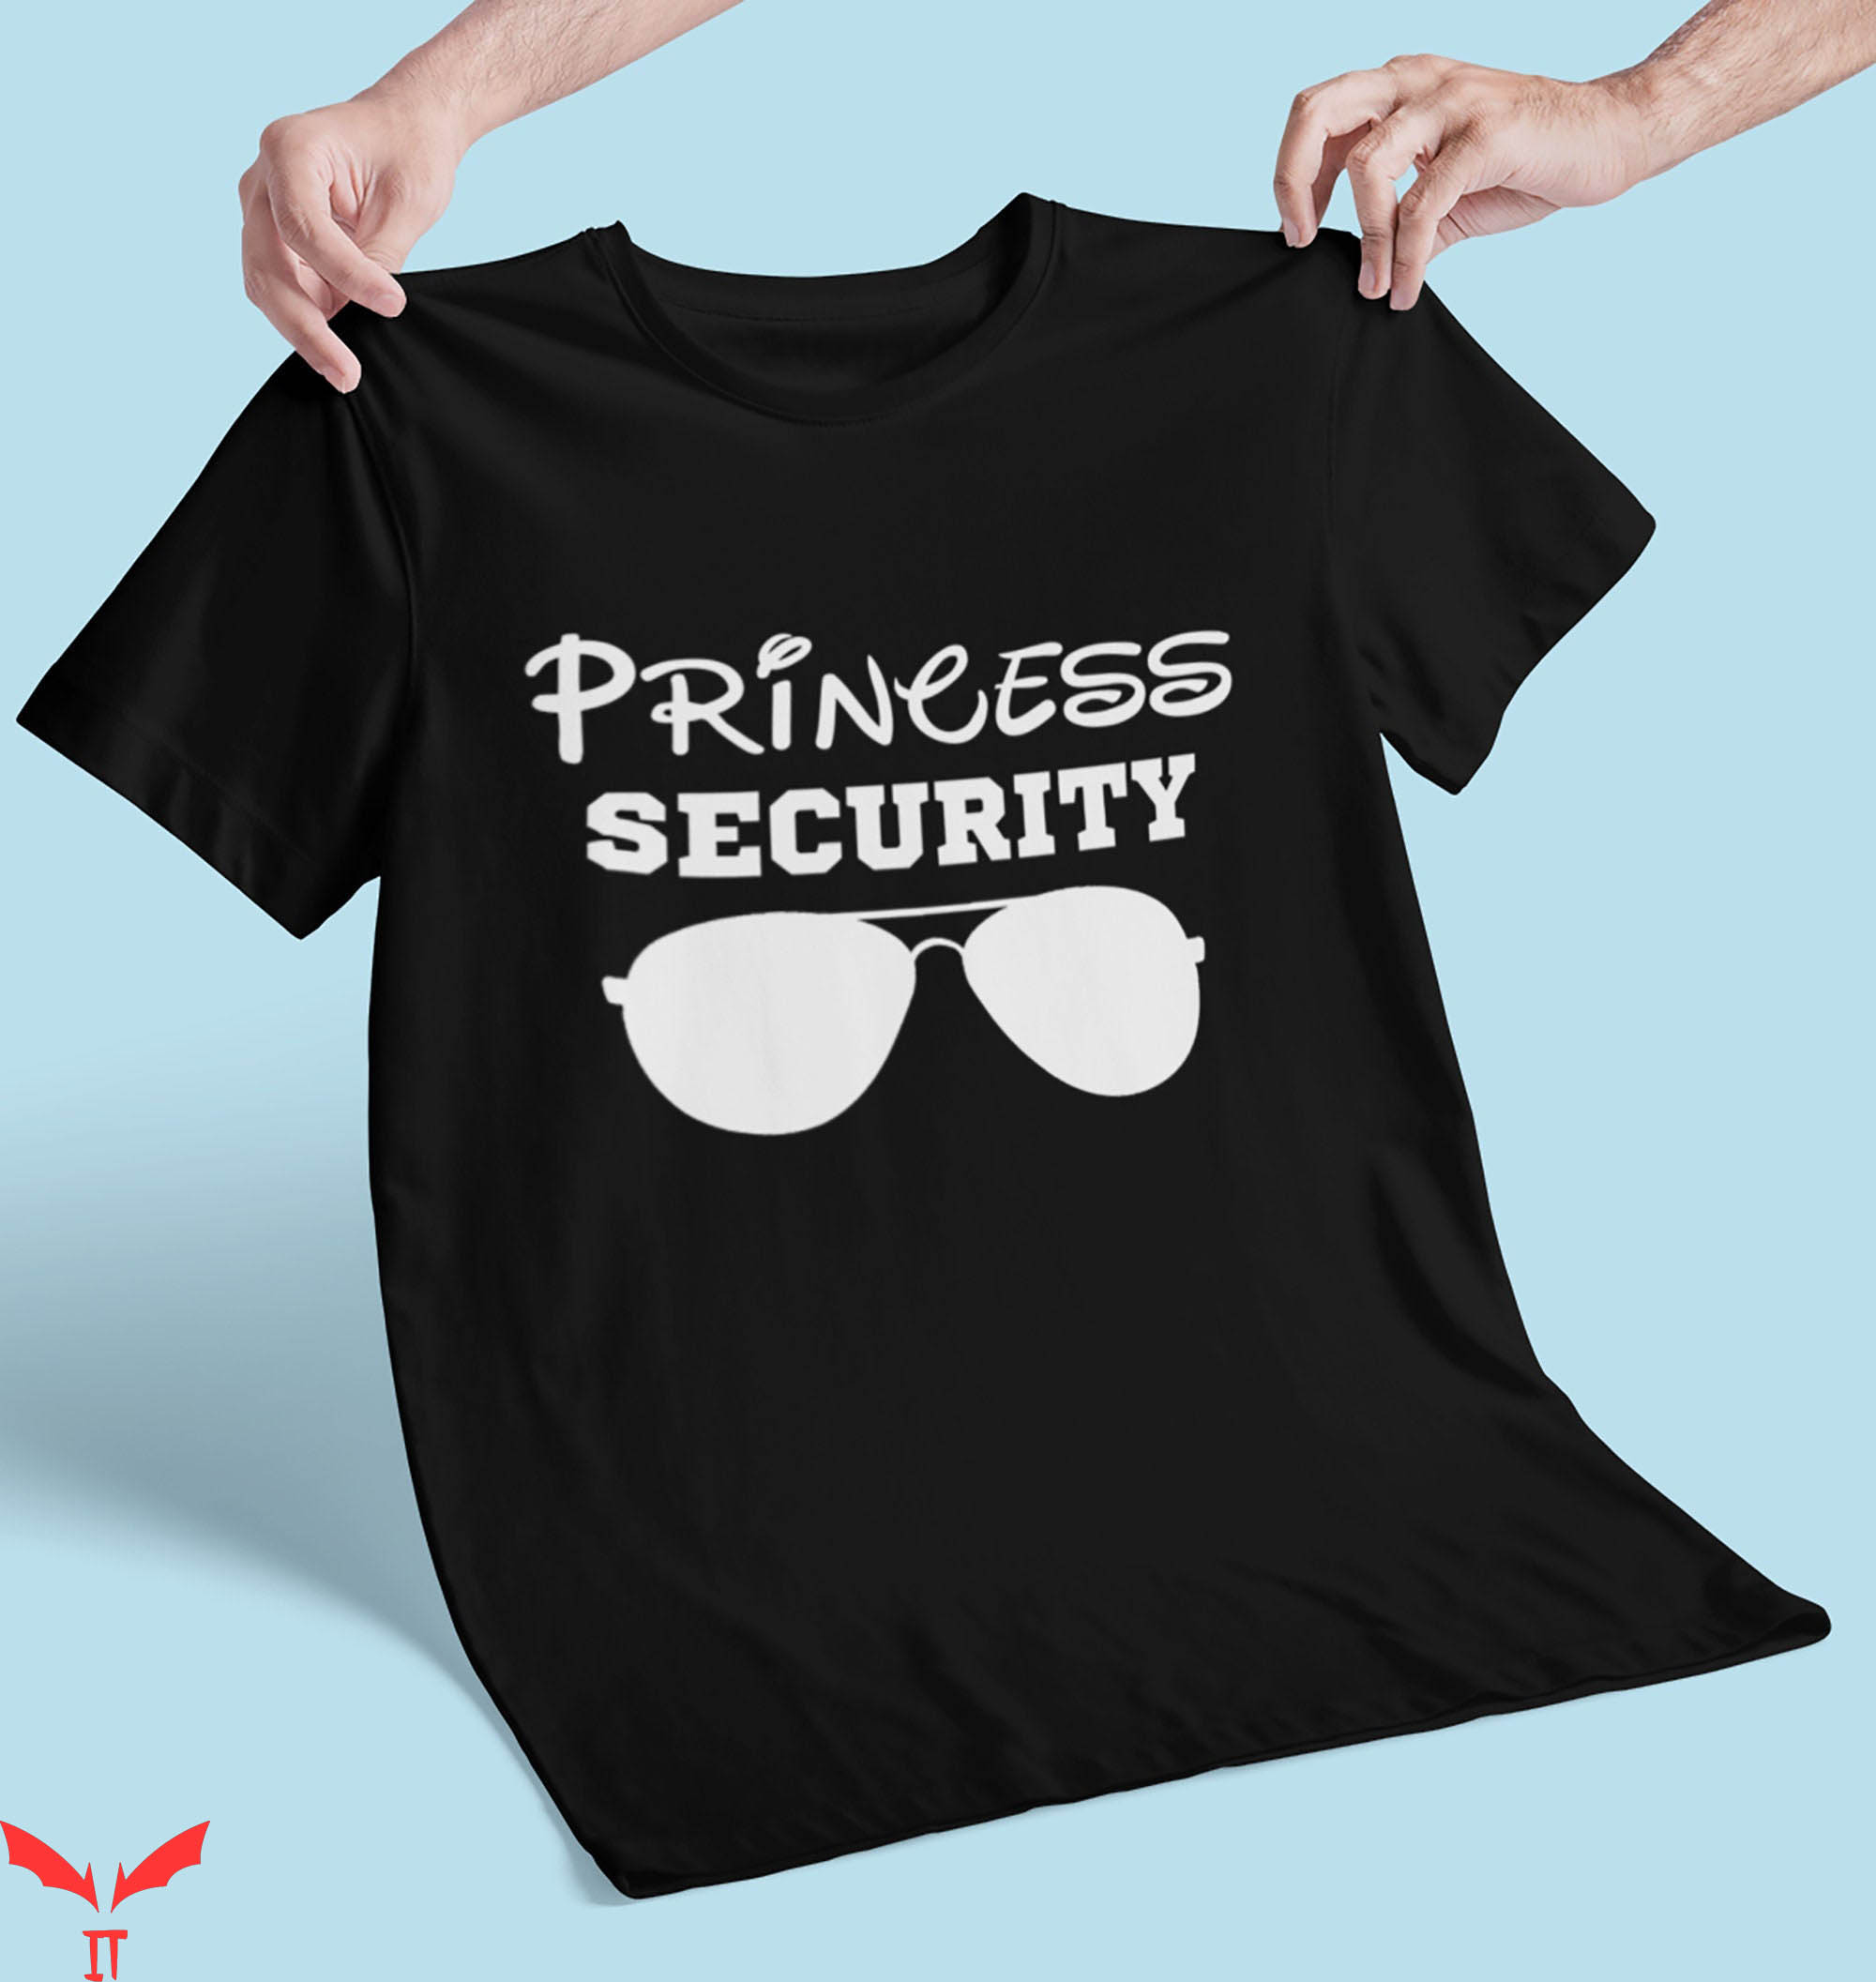 Security T-Shirt Princess Security Disneyland Family Shirt